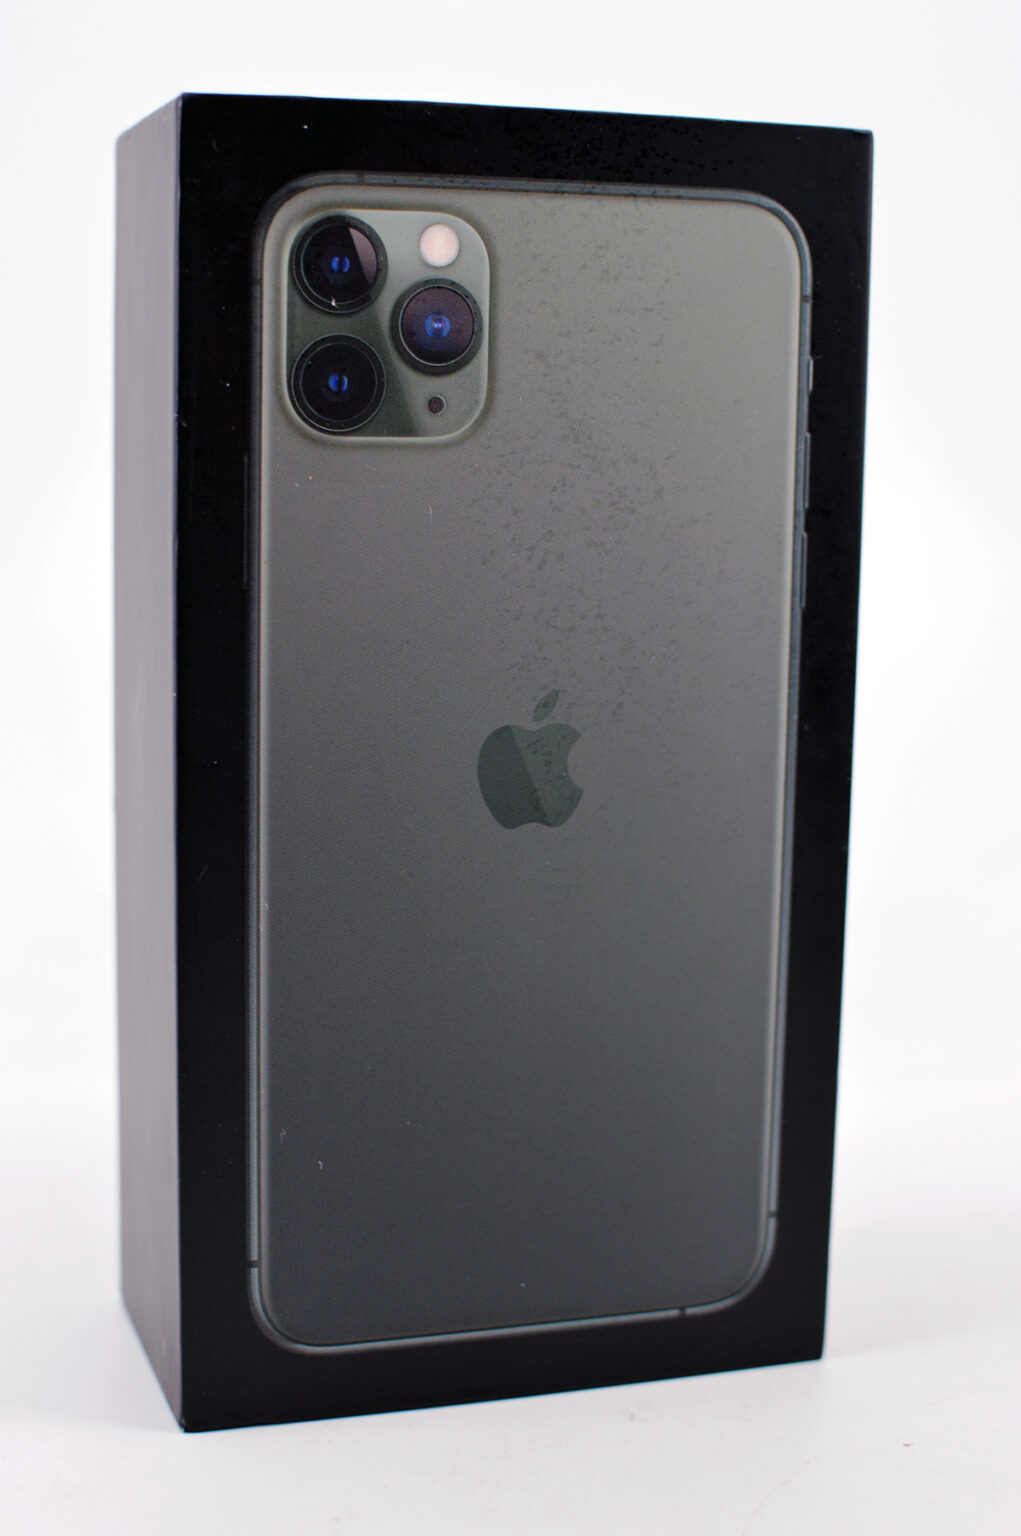 Apple iPhone 11 Pro Max - 64GB - Midnight Green (Unlocked) A2161 (CDMA